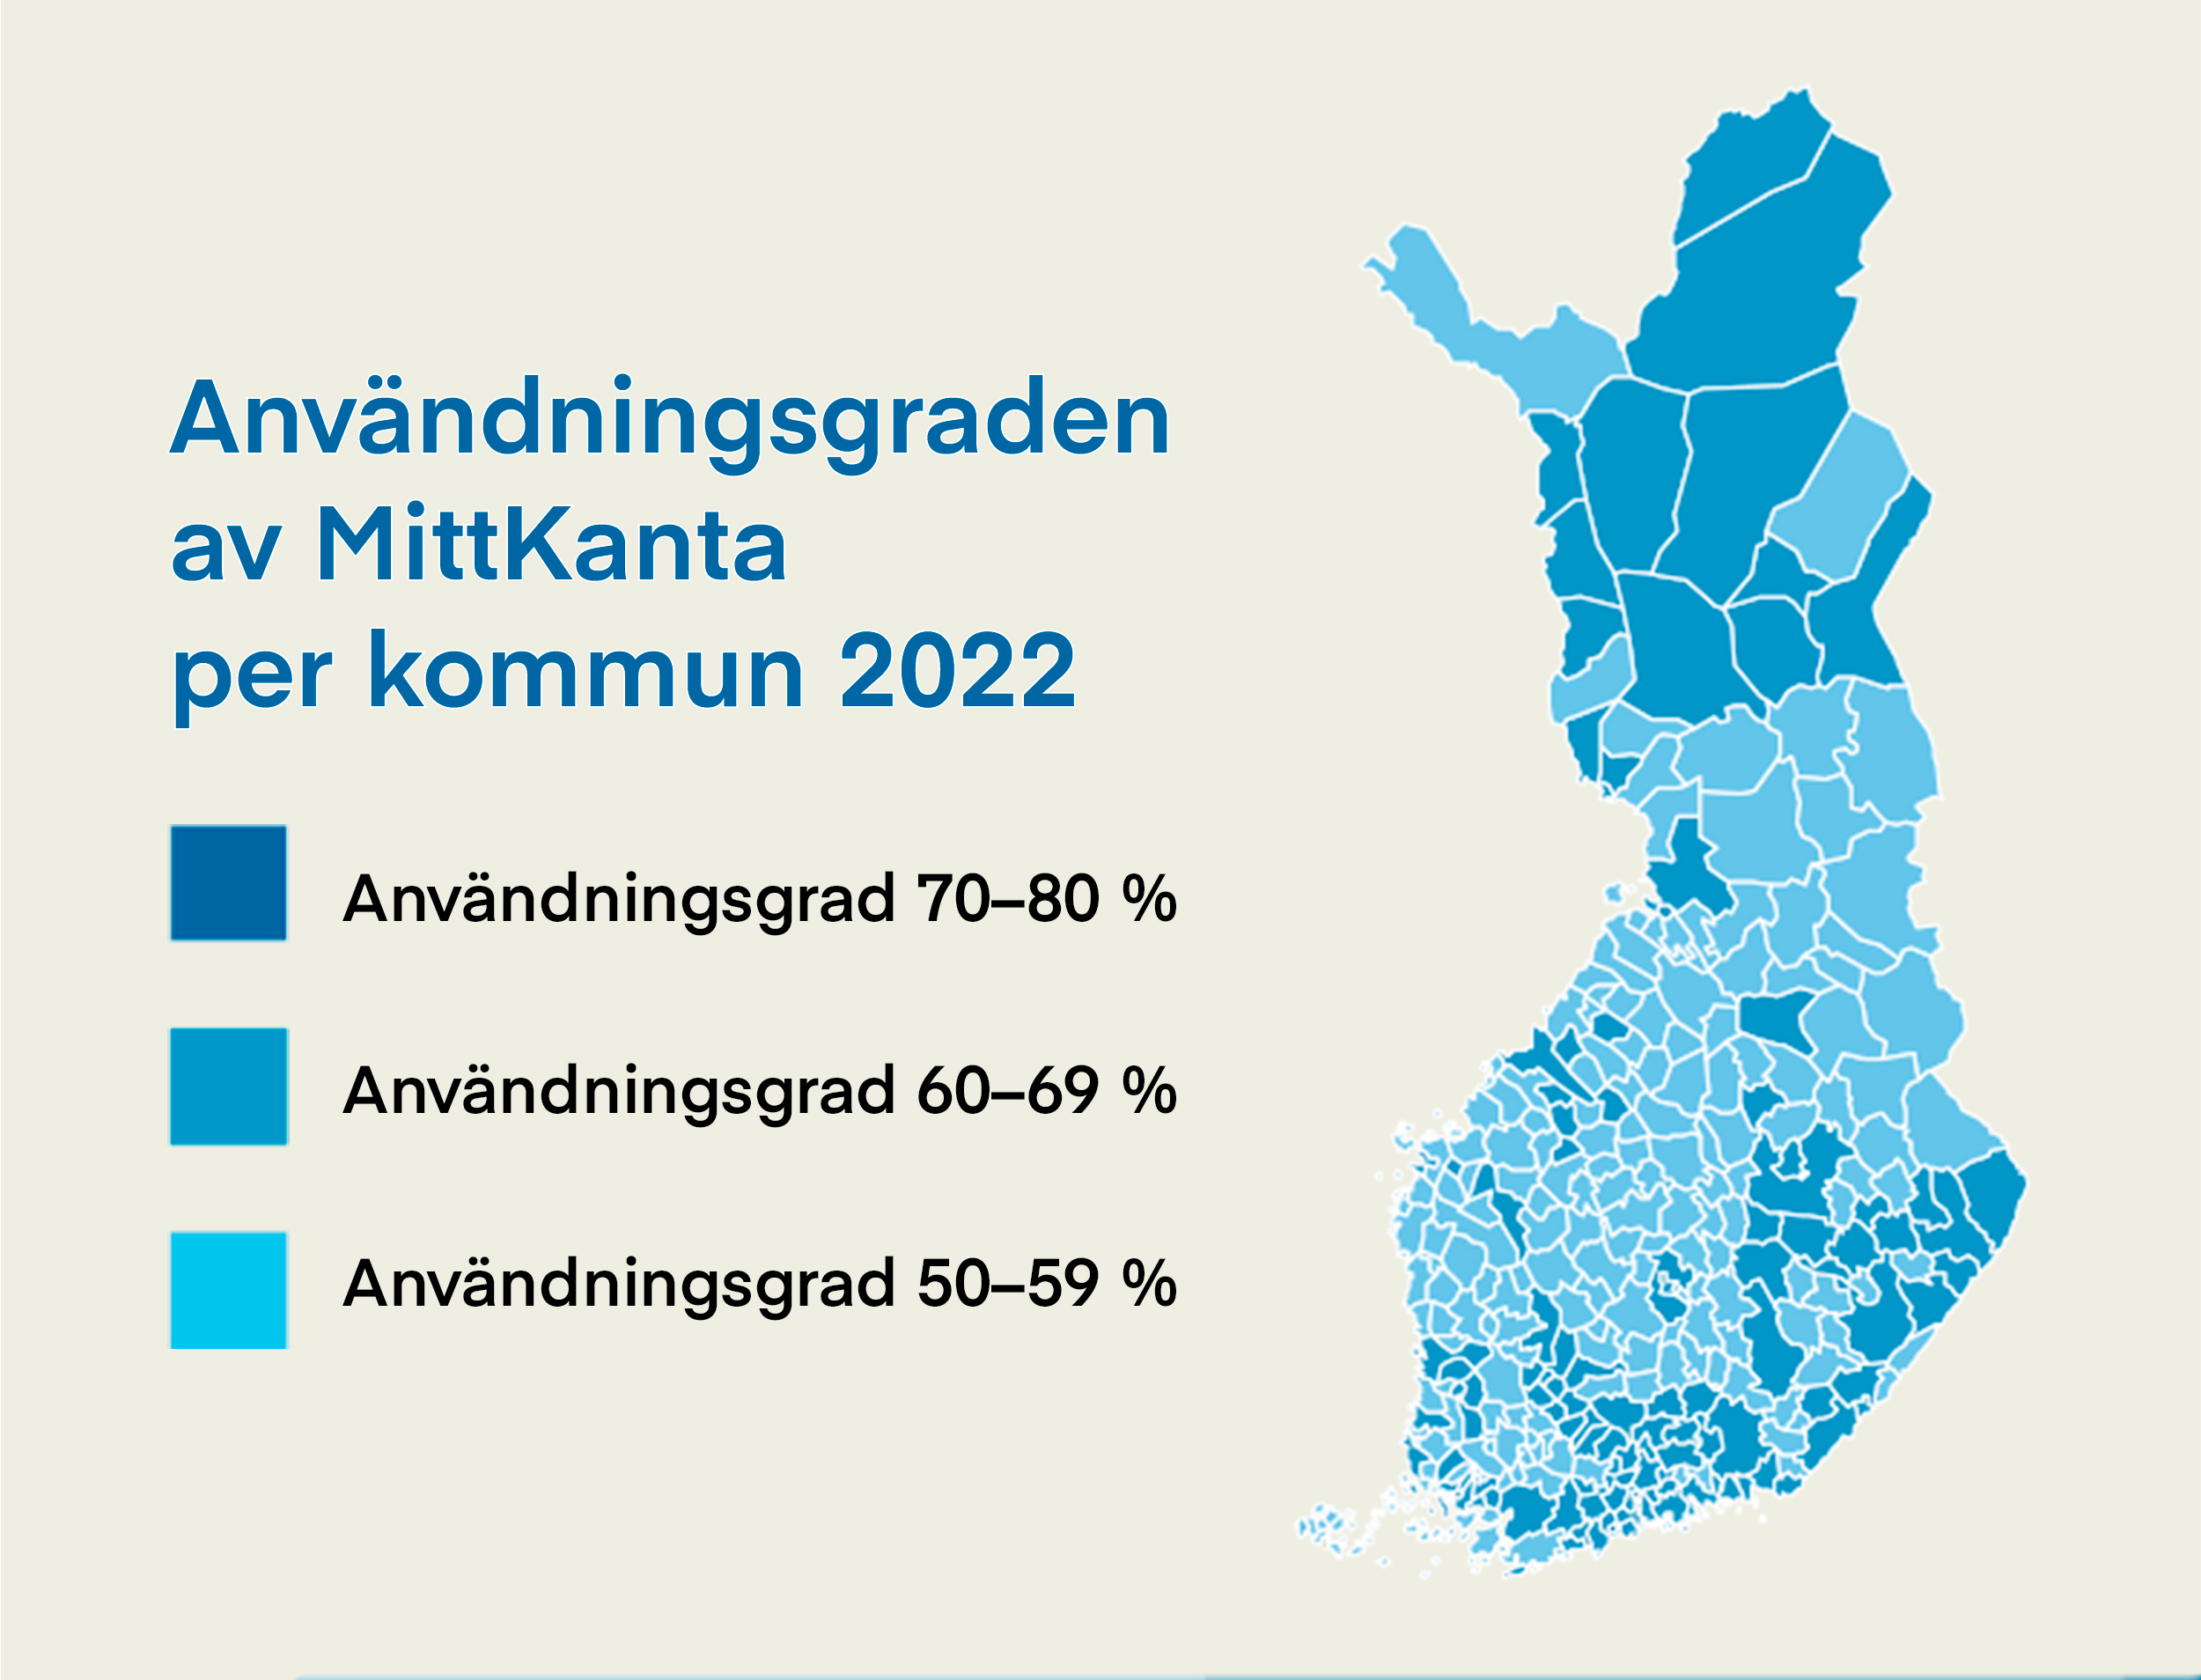 Användningsgraden av MittKanta per kommun 2022.